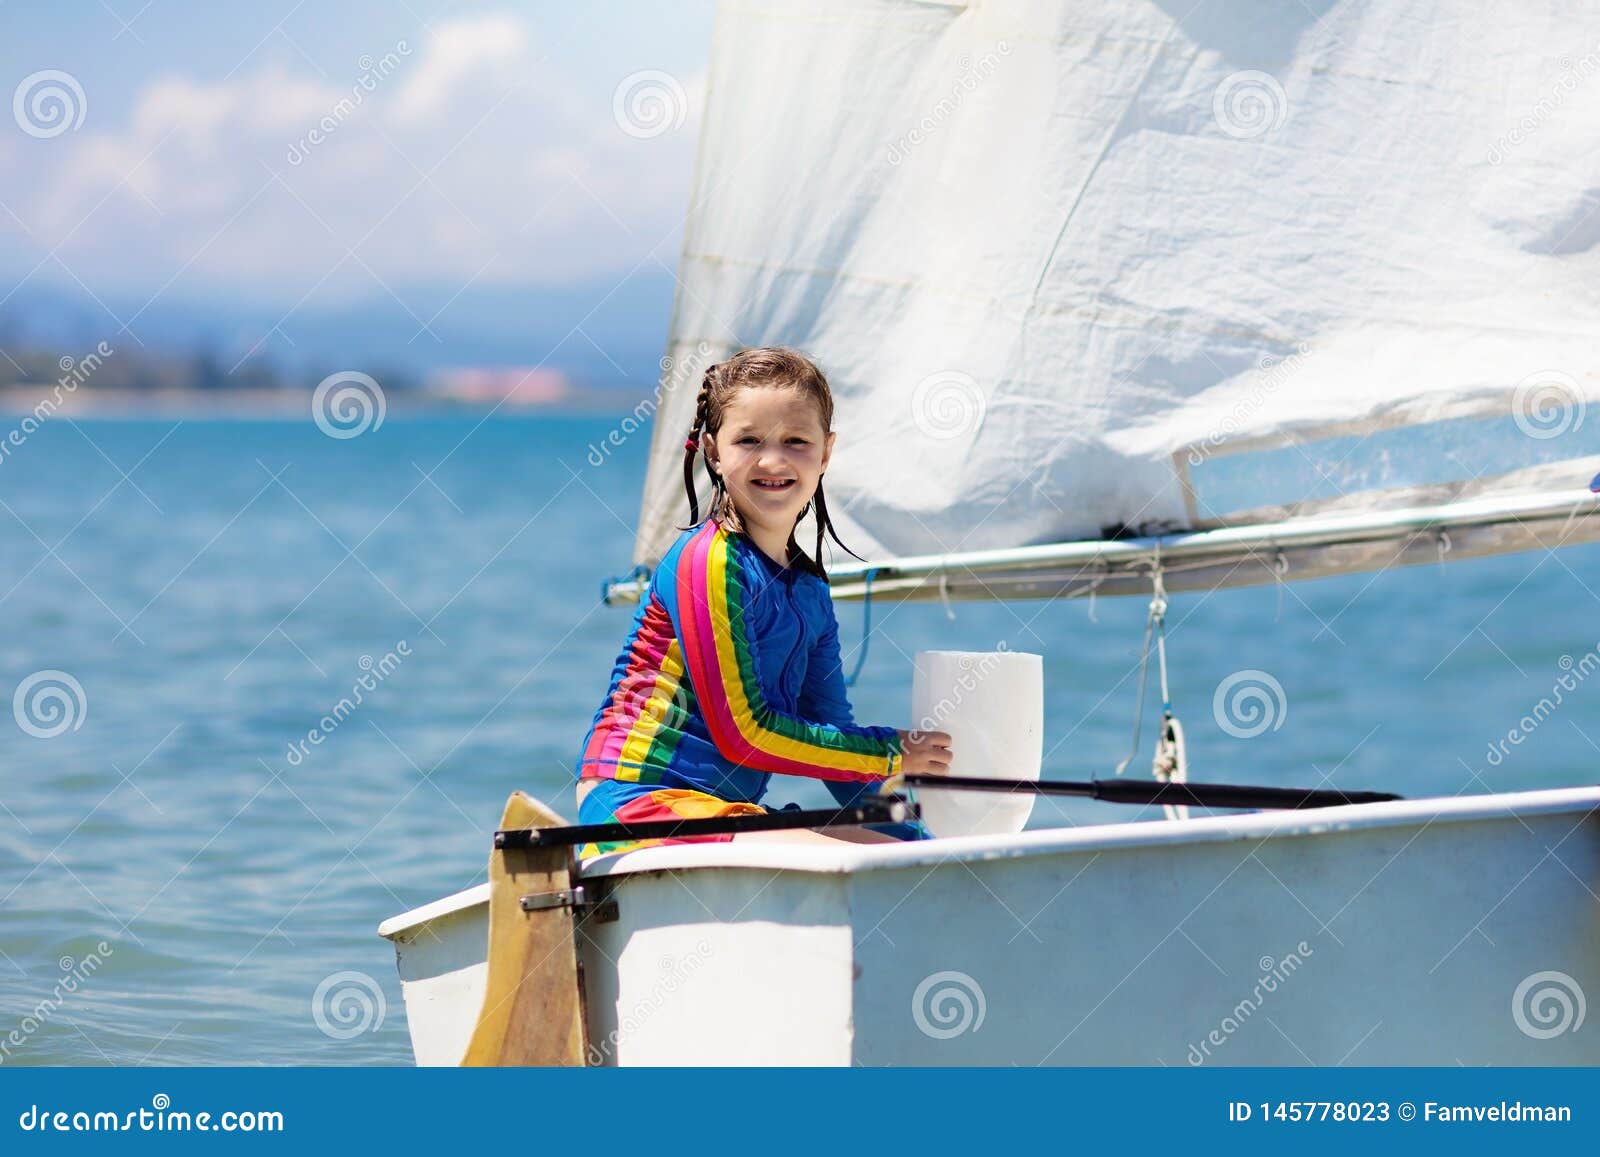 Young sail. Дети под парусом лета. Парус для детей. Ребенок на яхте оптимист. Мальчик задумался на яхте оптимист.